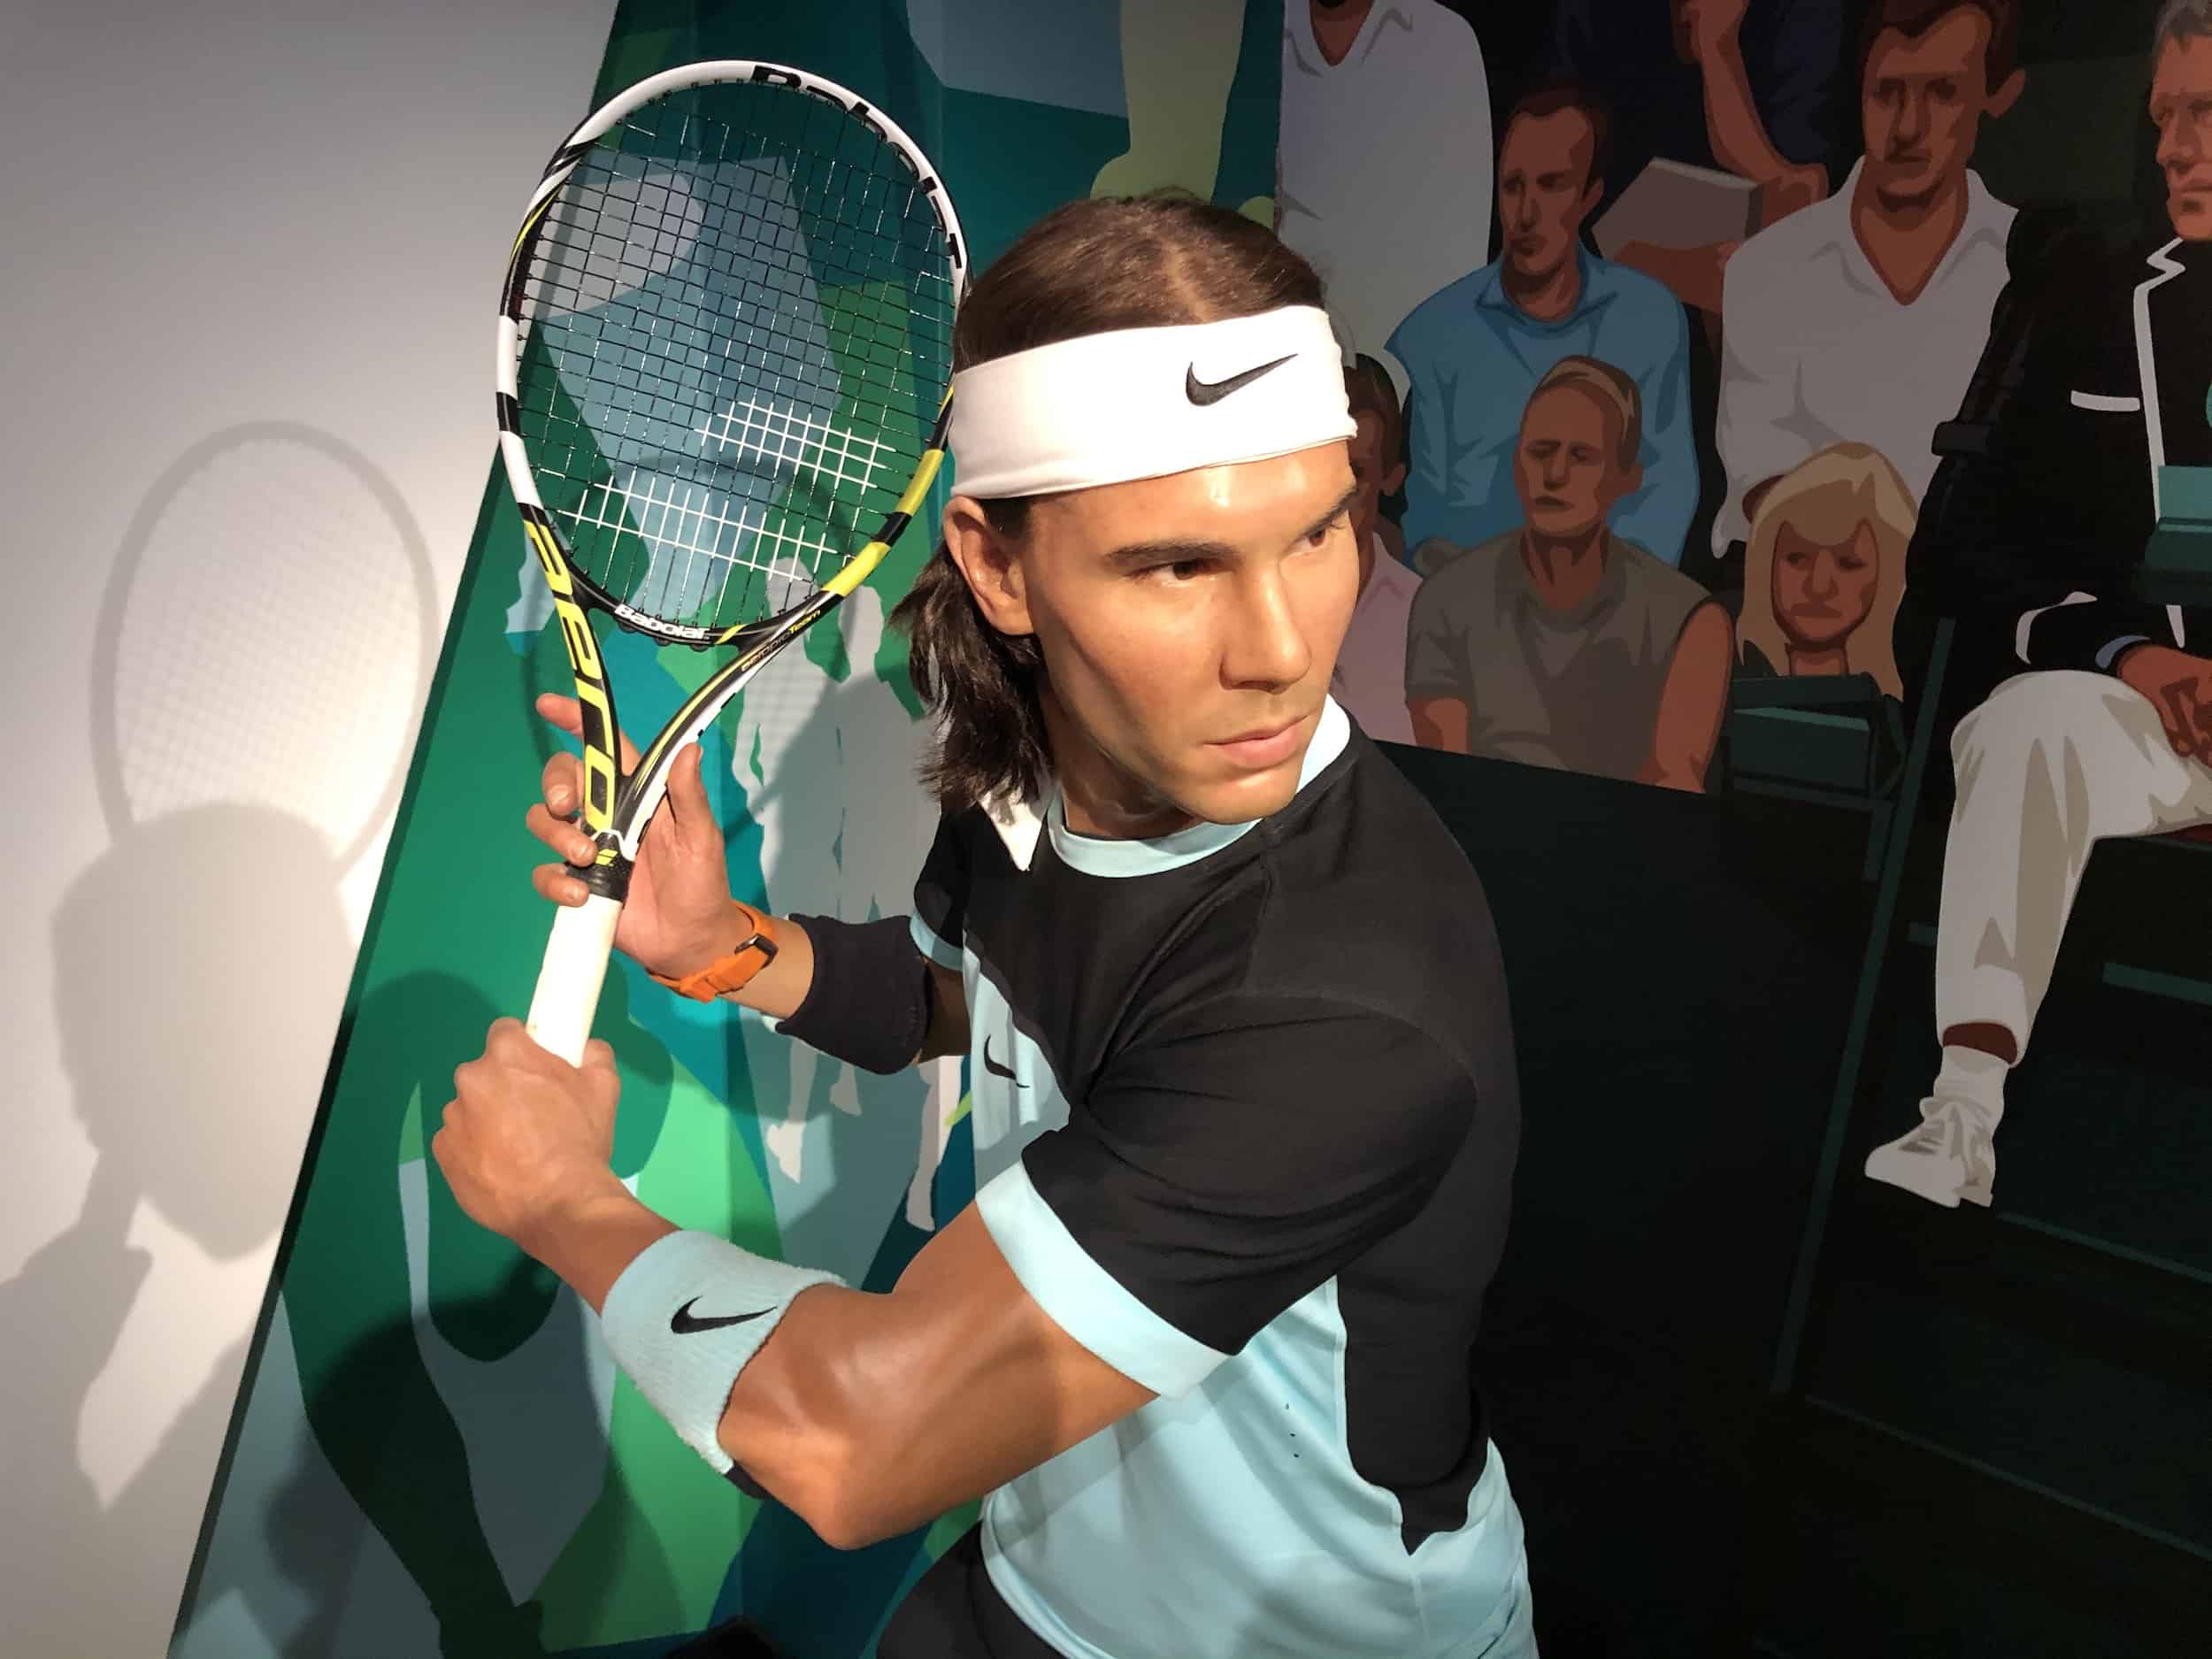 Rafael Nadal wax figure